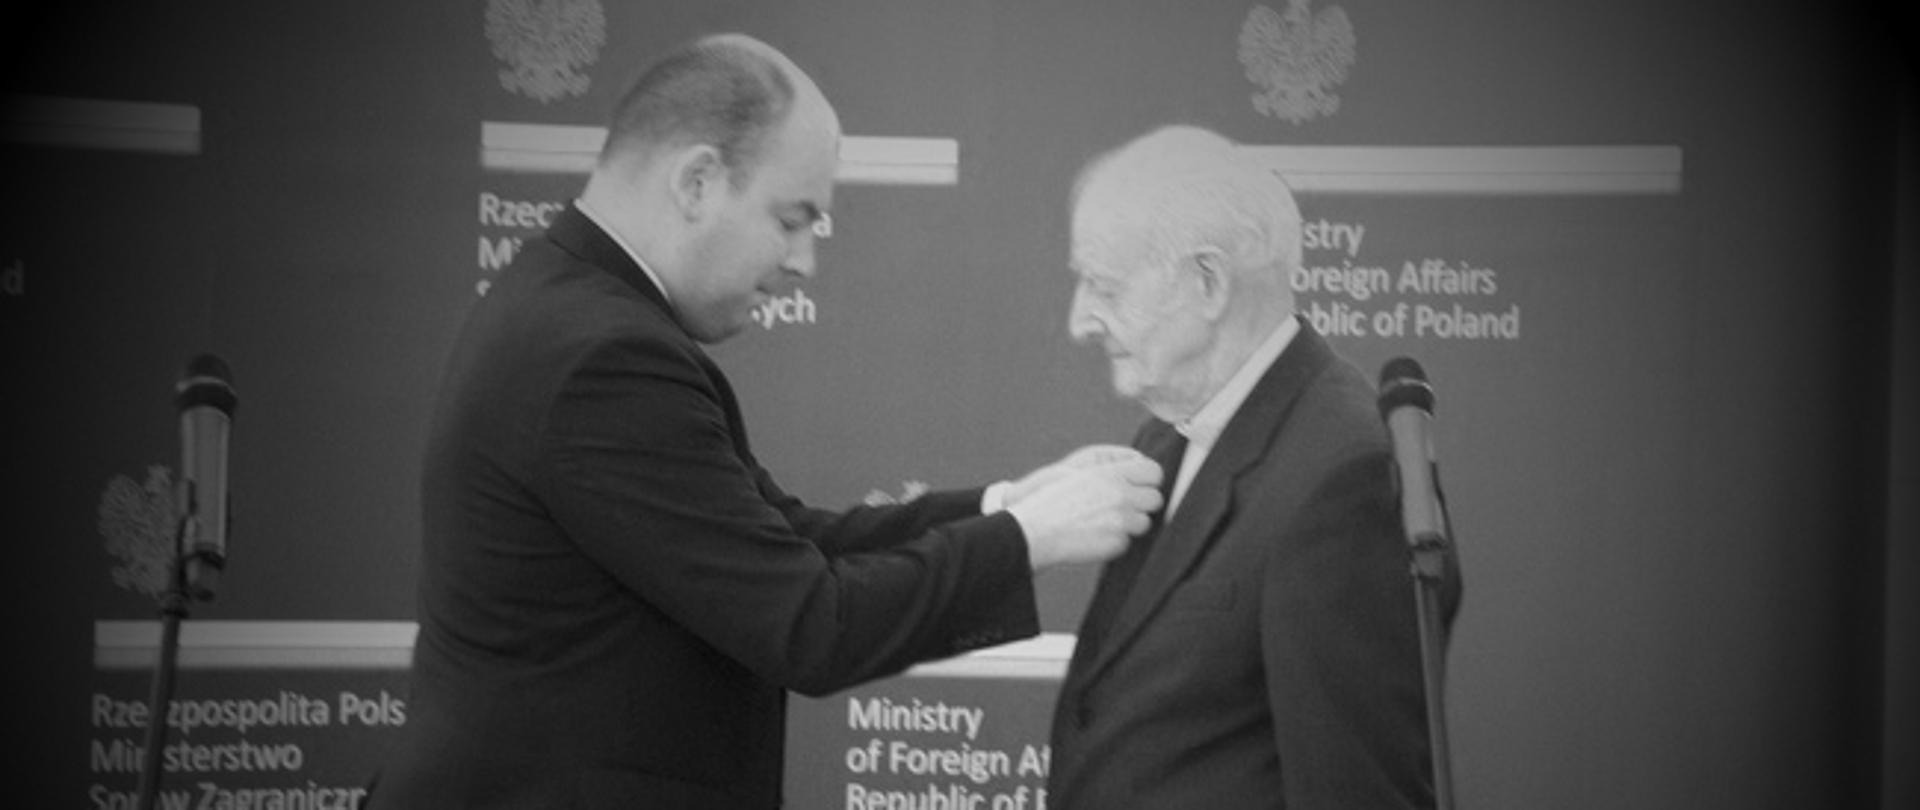 ks. prof. Roman Dzownkowski otrzymujący medal Bene Merito